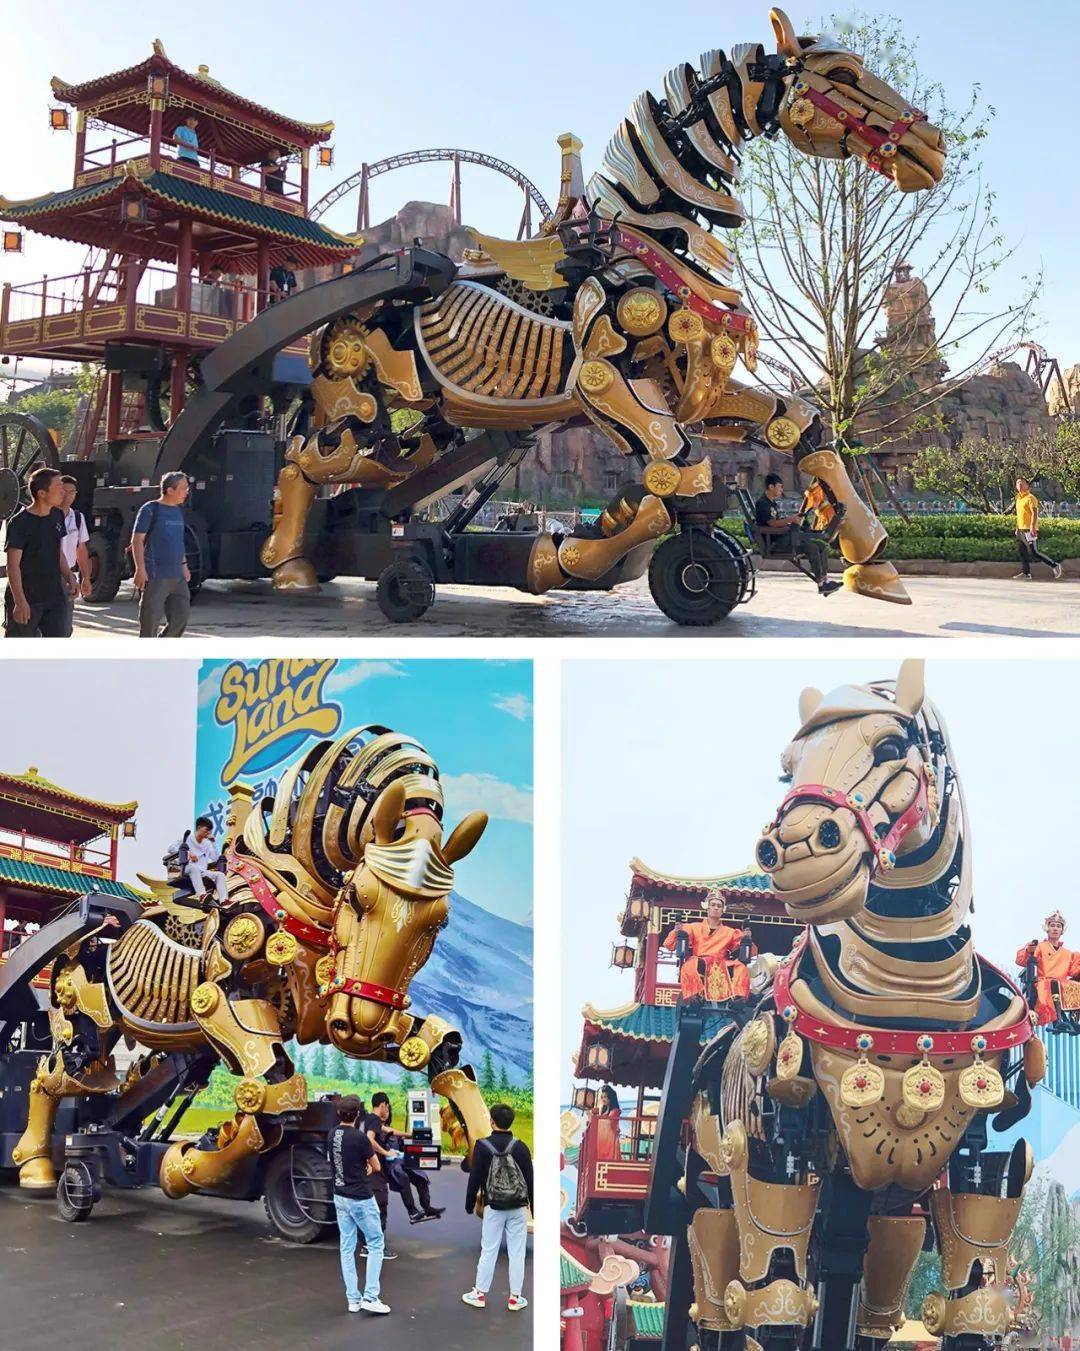 《中华巨马》巨型机械仿生装置艺术孪生作品——《黄金巨马》落户成都